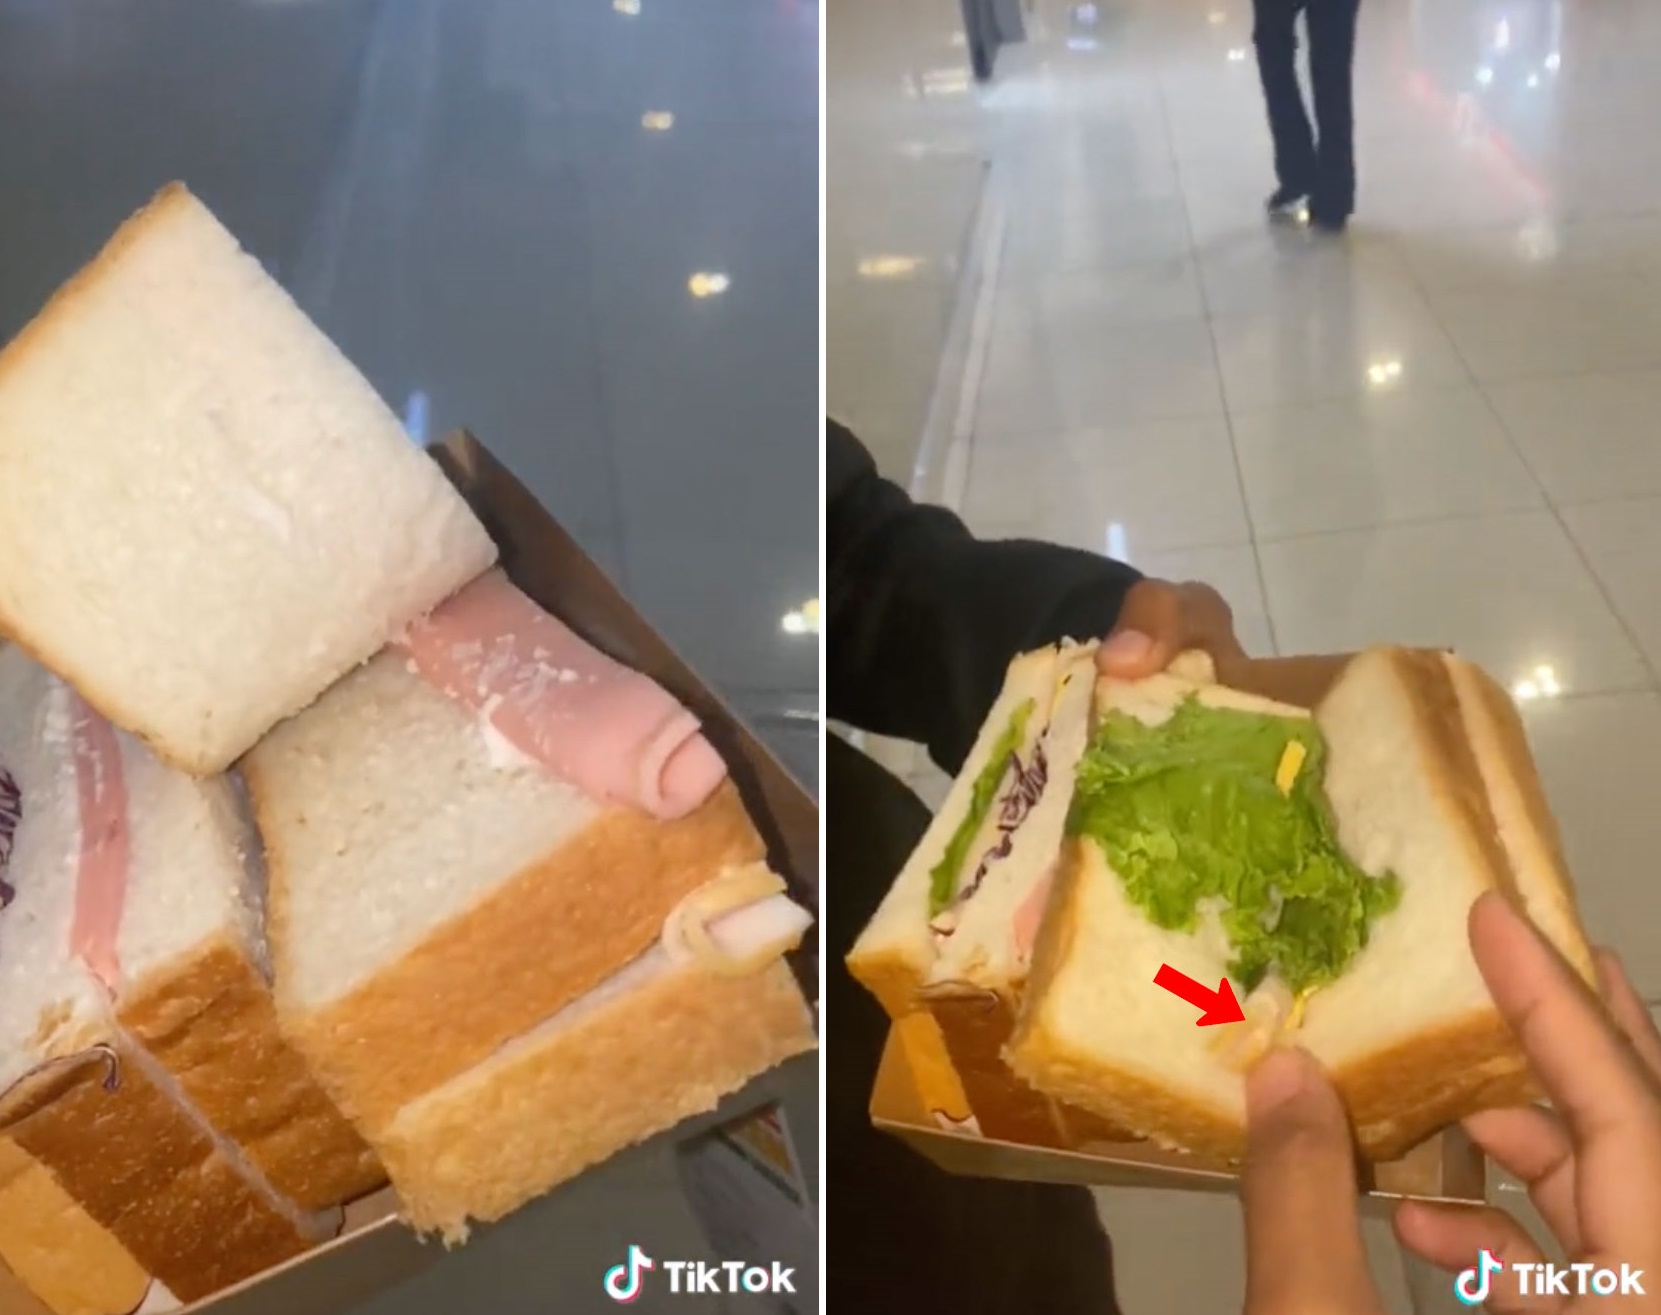 便利店买RM7双火腿三明治 “打开仅一片对折火腿”